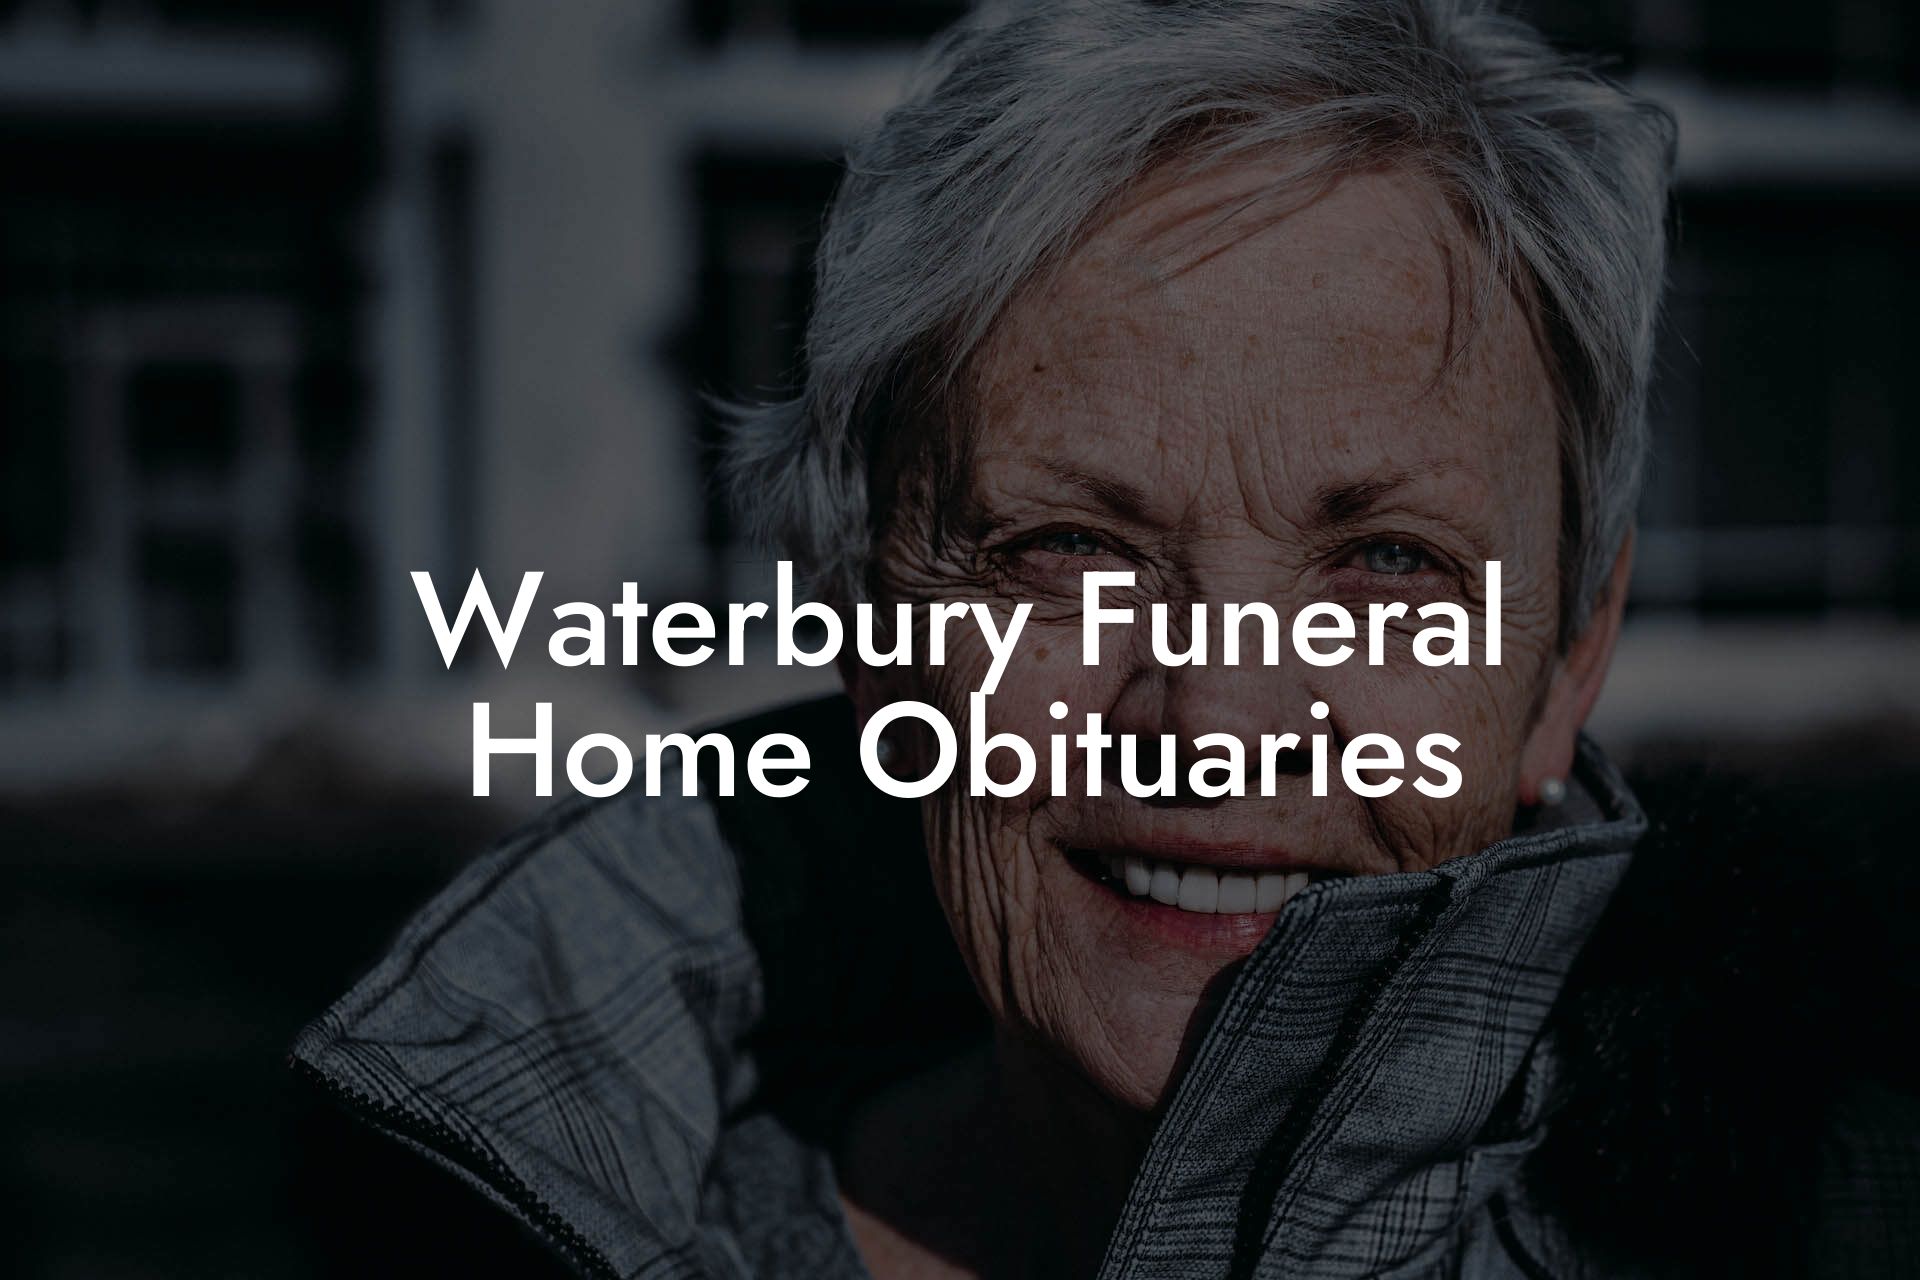 Waterbury Funeral Home Obituaries